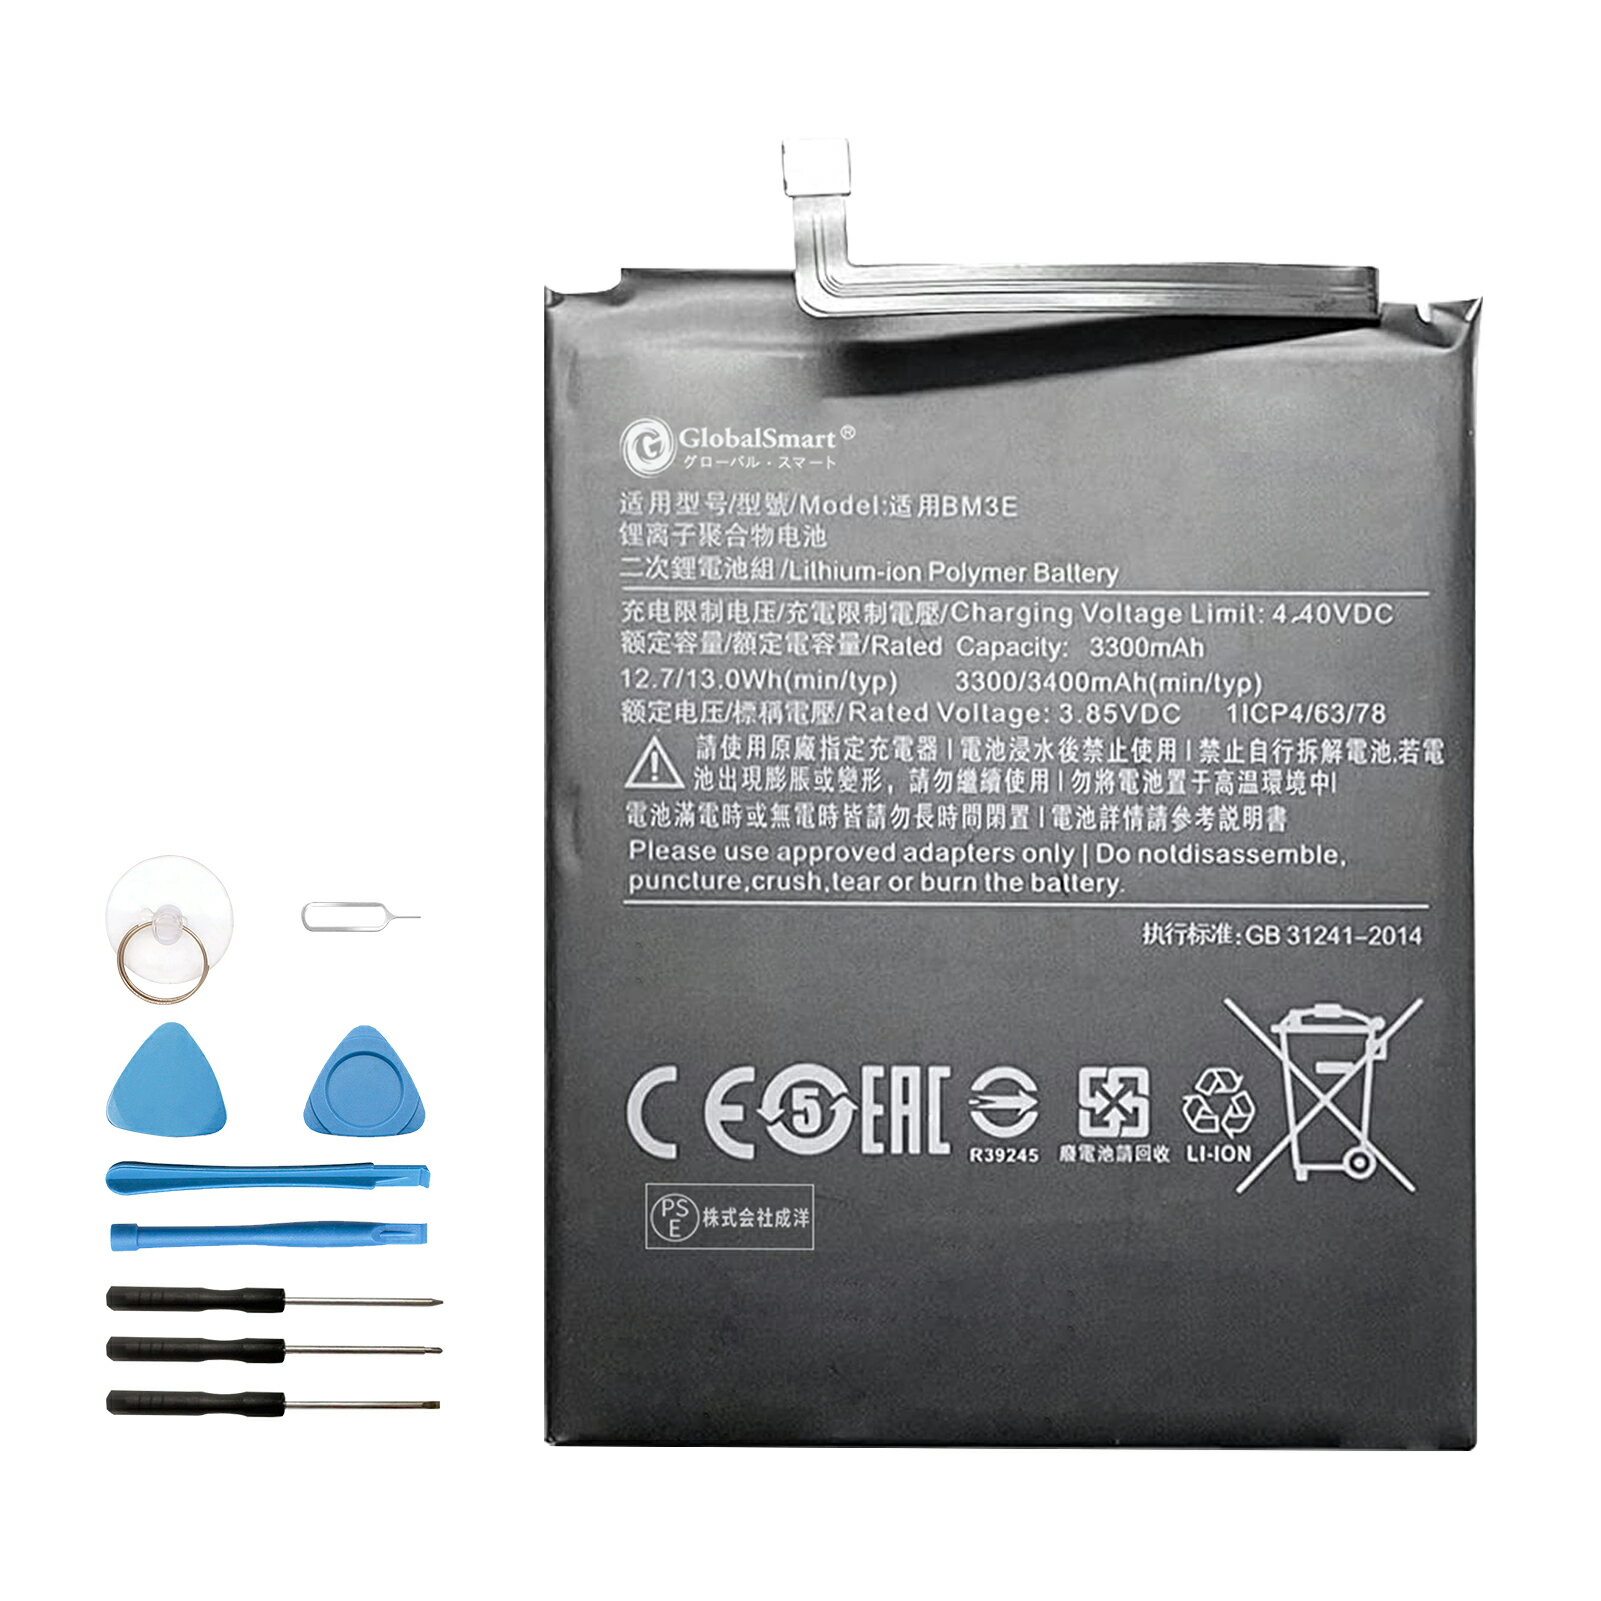 【在庫あり送料無料】Xiaomi M1803E1T 互換 バッテリー【3300mAh 3.85V】交換用工具セット WIK PSE認証 1年保証 交換バッテリー 【GlobalSmart】 電池交換